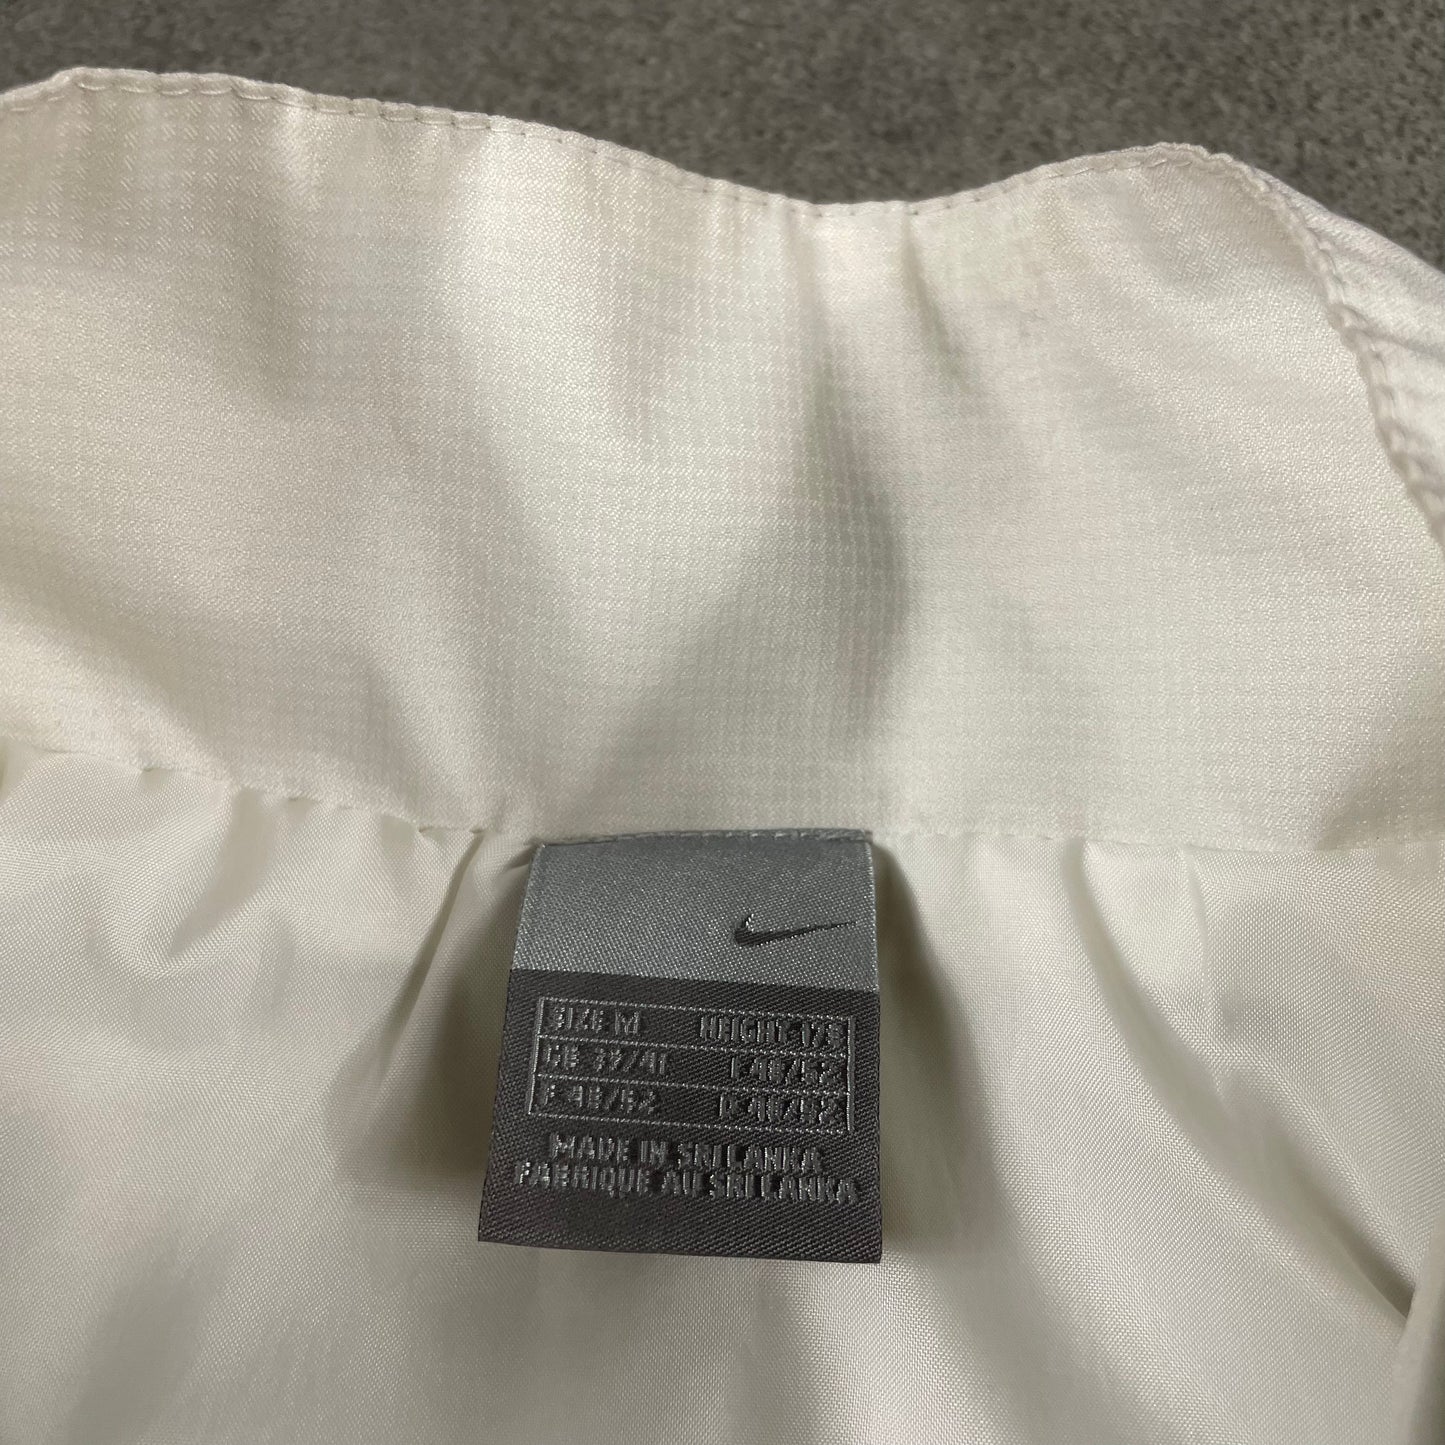 Nike Tn vintage Jacket (M)